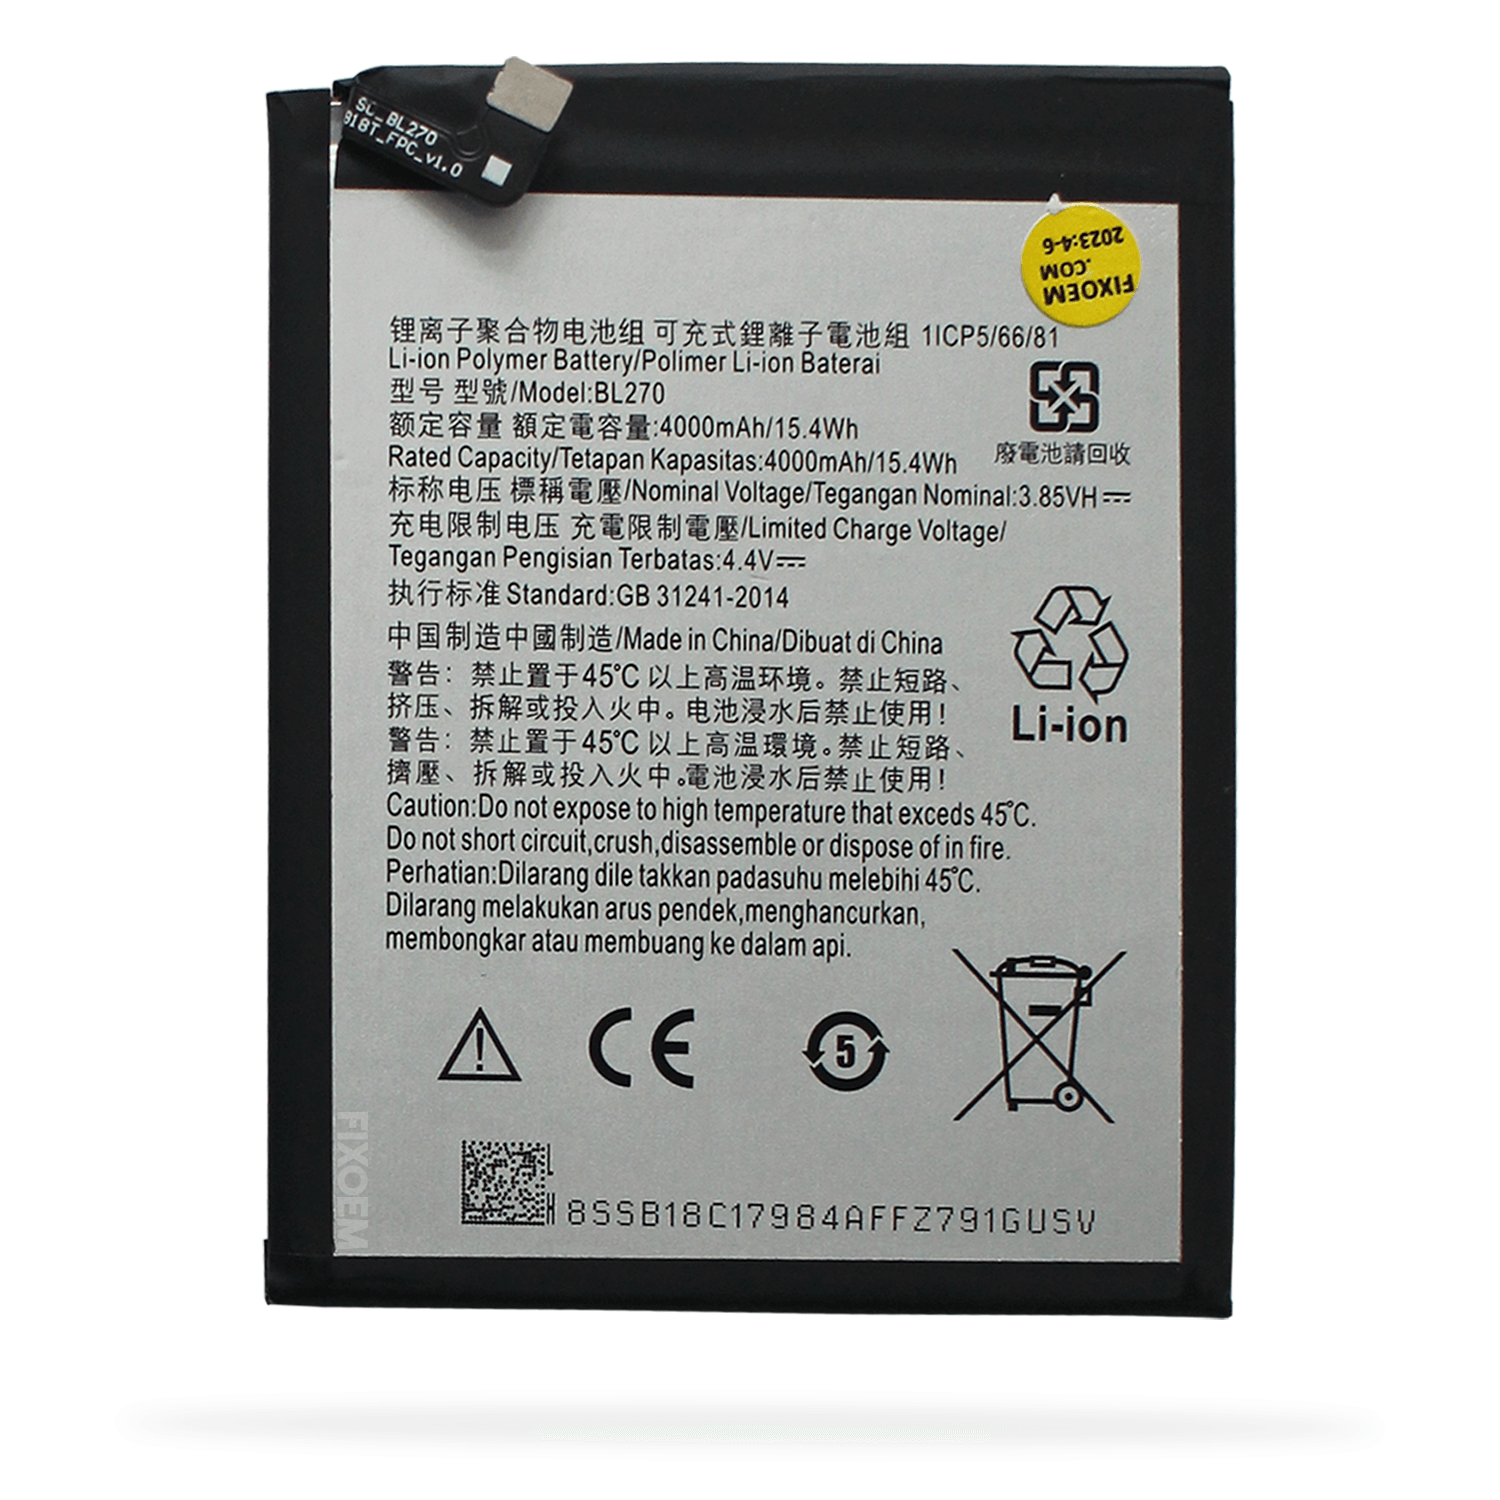 Bateria Moto G6 Play / Moto E5 / Lenovo K6 Note Xt1922 Xt1944 Bl270. |+2,000 reseñas 4.8/5 ⭐